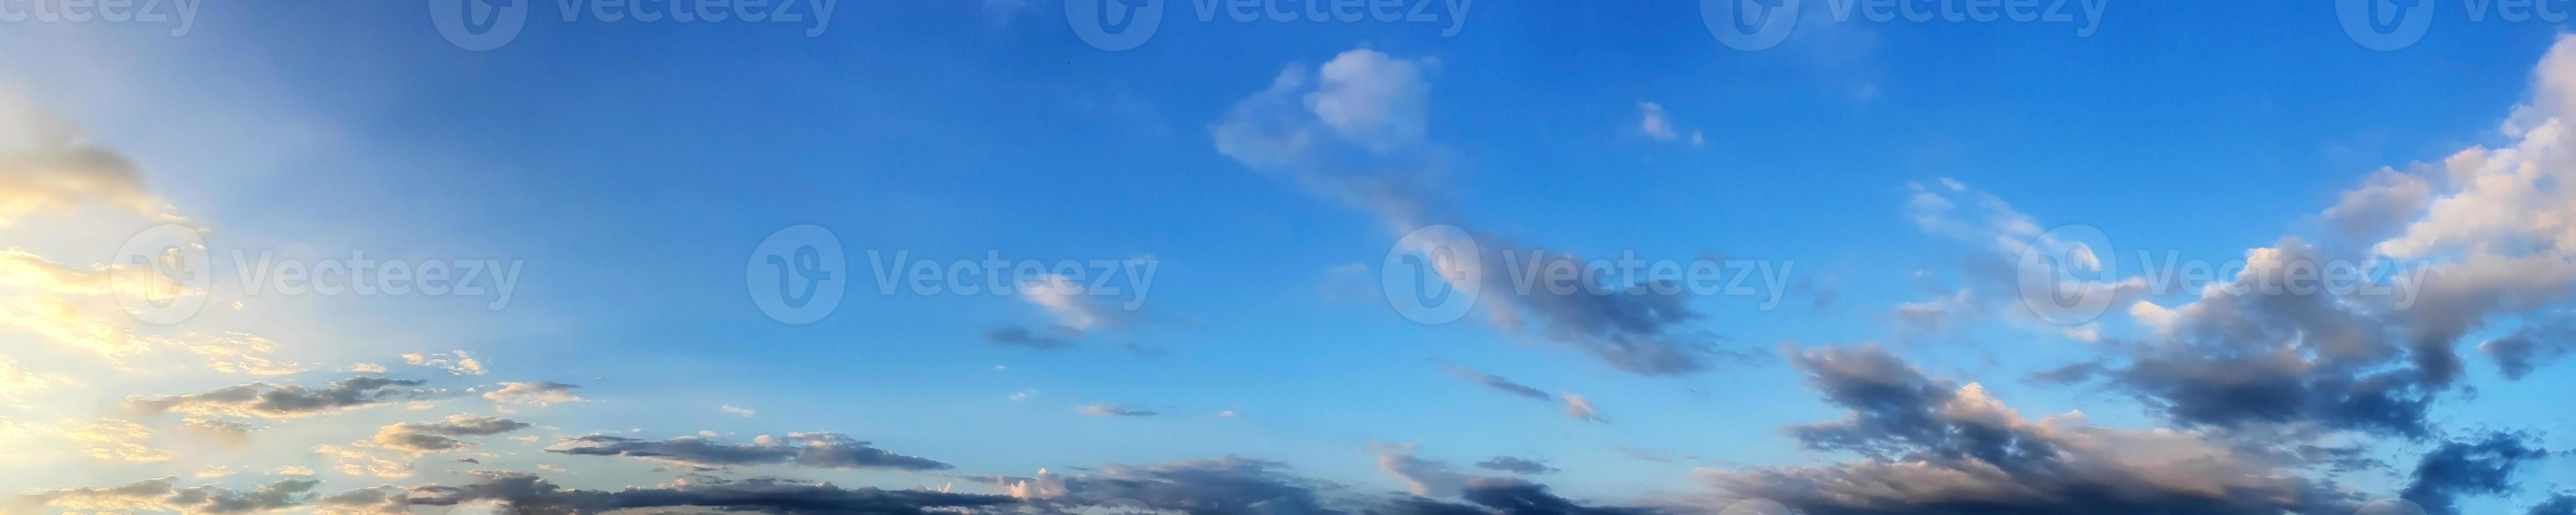 céu panorâmico com bela nuvem em um dia ensolarado foto